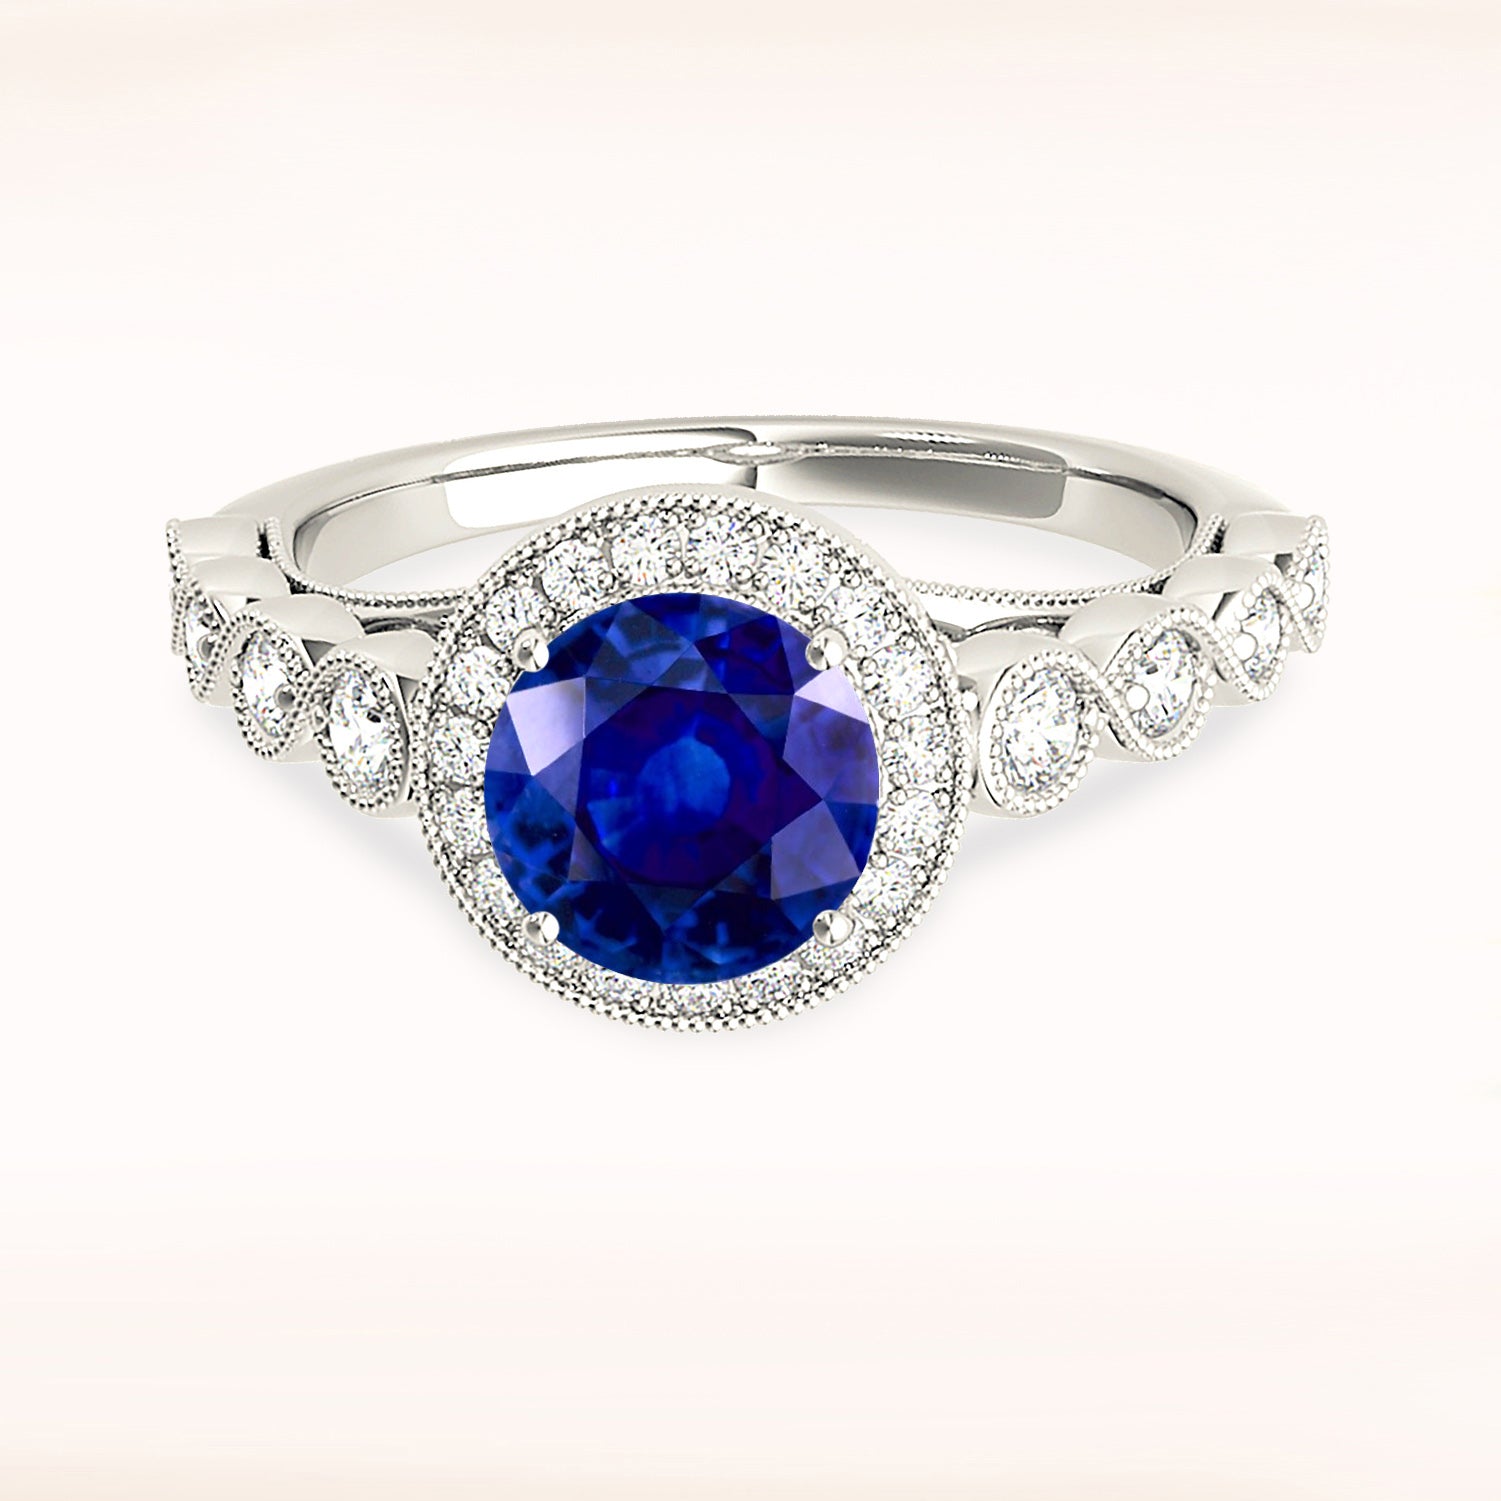 1.35 ct. Genuine Blue Sapphire Ring With 0.35 ctw. Diamond Milgrain Halo, Swirly Beaded Diamond Band | Natural Sapphire And Diamond Ring-in 14K/18K White, Yellow, Rose Gold and Platinum - Christmas Jewelry Gift -VIRABYANI